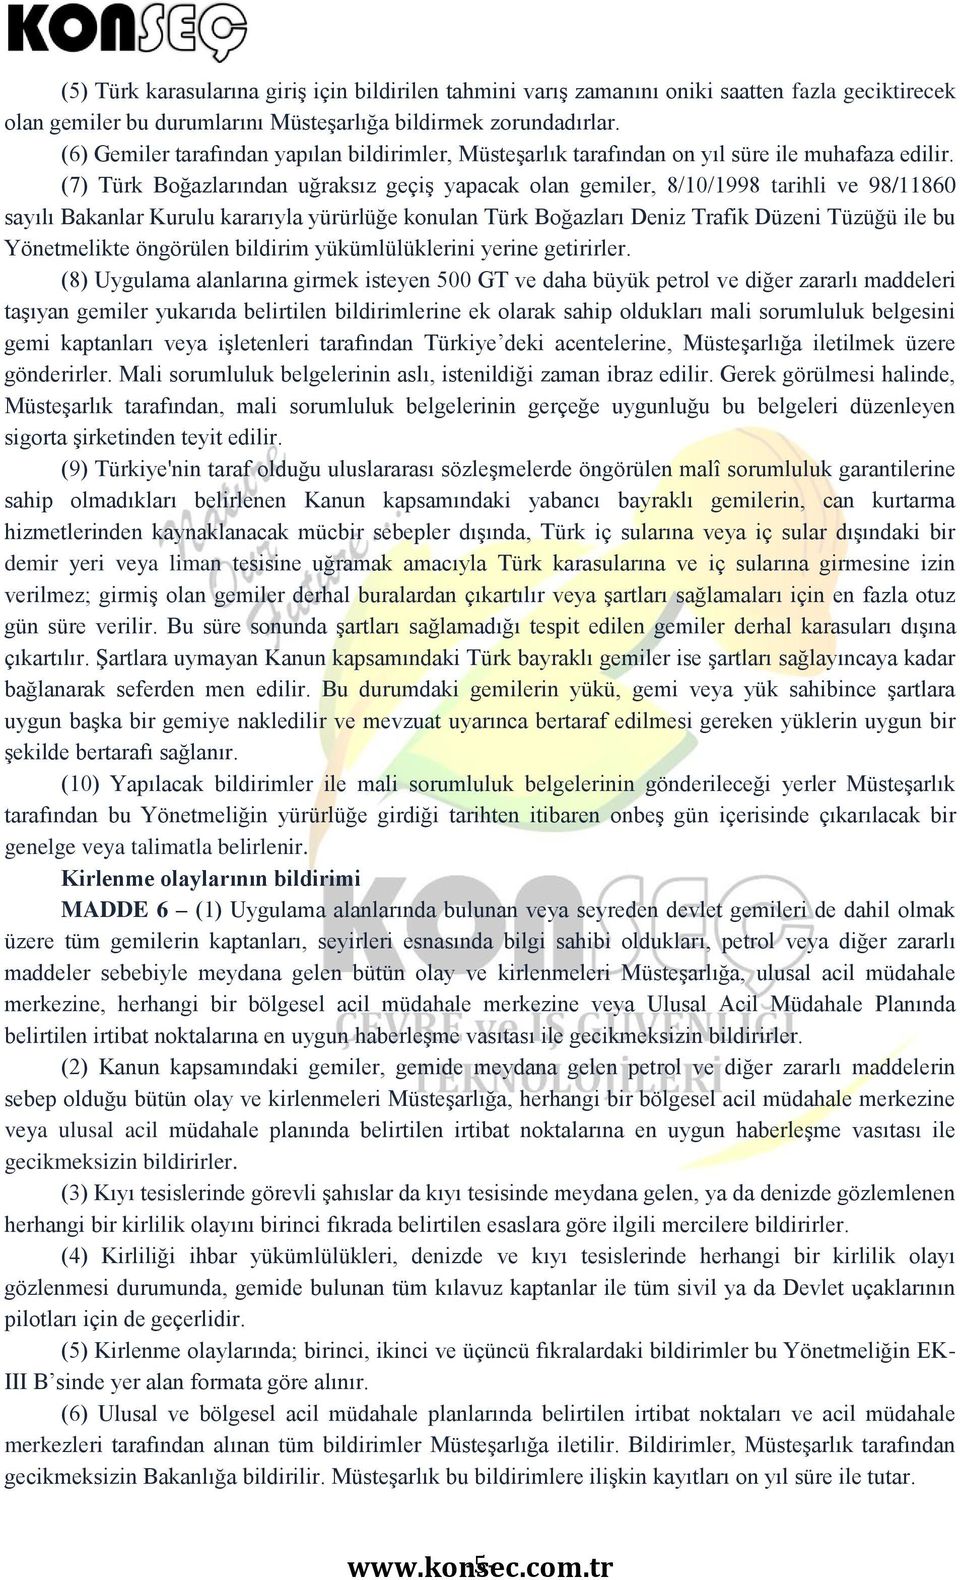 (7) Türk Boğazlarından uğraksız geçiş yapacak olan gemiler, 8/10/1998 tarihli ve 98/11860 sayılı Bakanlar Kurulu kararıyla yürürlüğe konulan Türk Boğazları Deniz Trafik Düzeni Tüzüğü ile bu